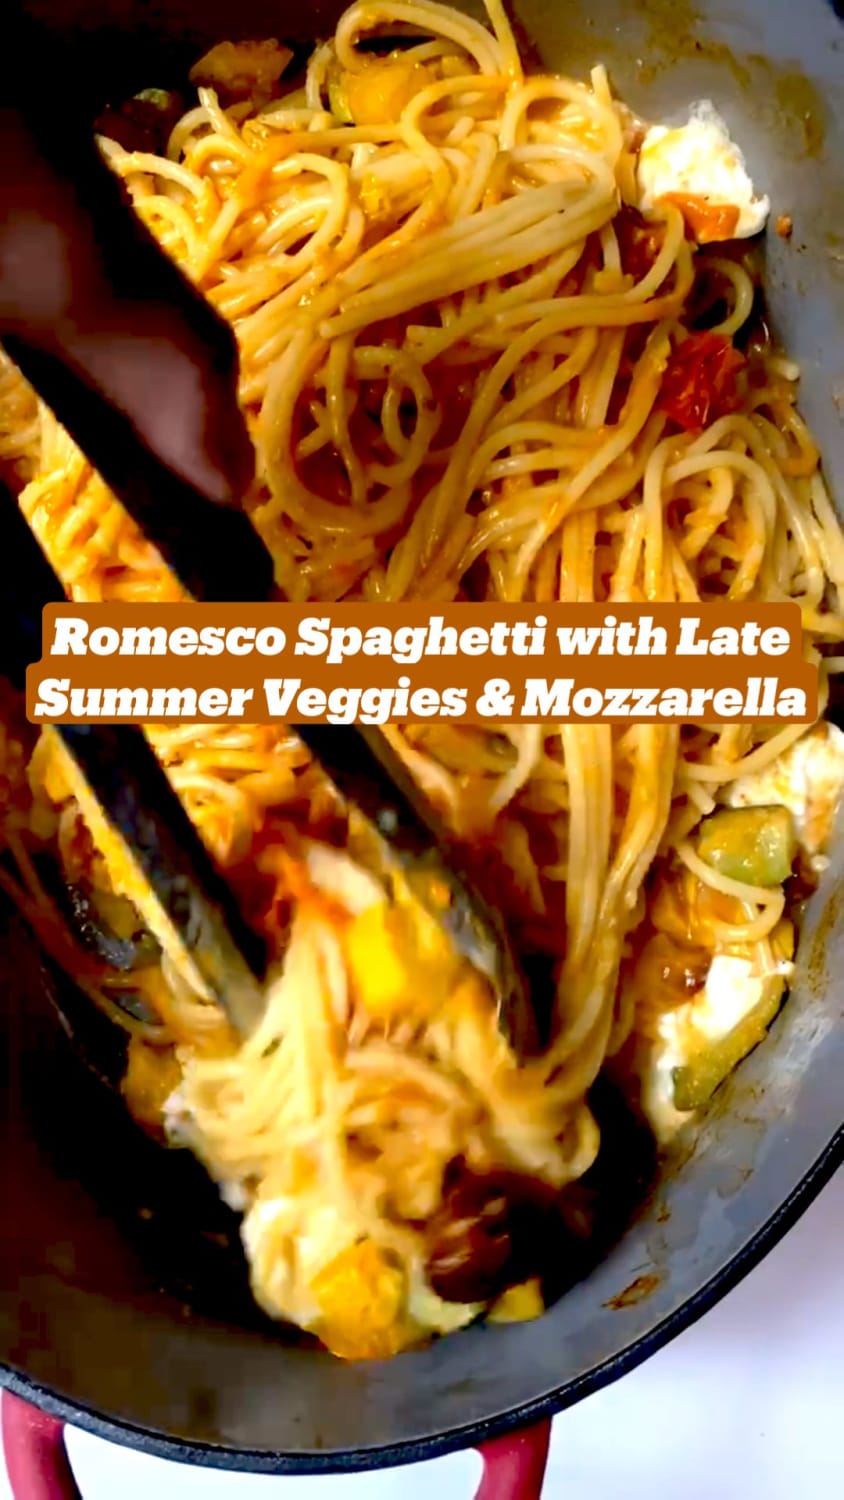 Romesco Spaghetti with Late Summer Veggies & Mozzarella